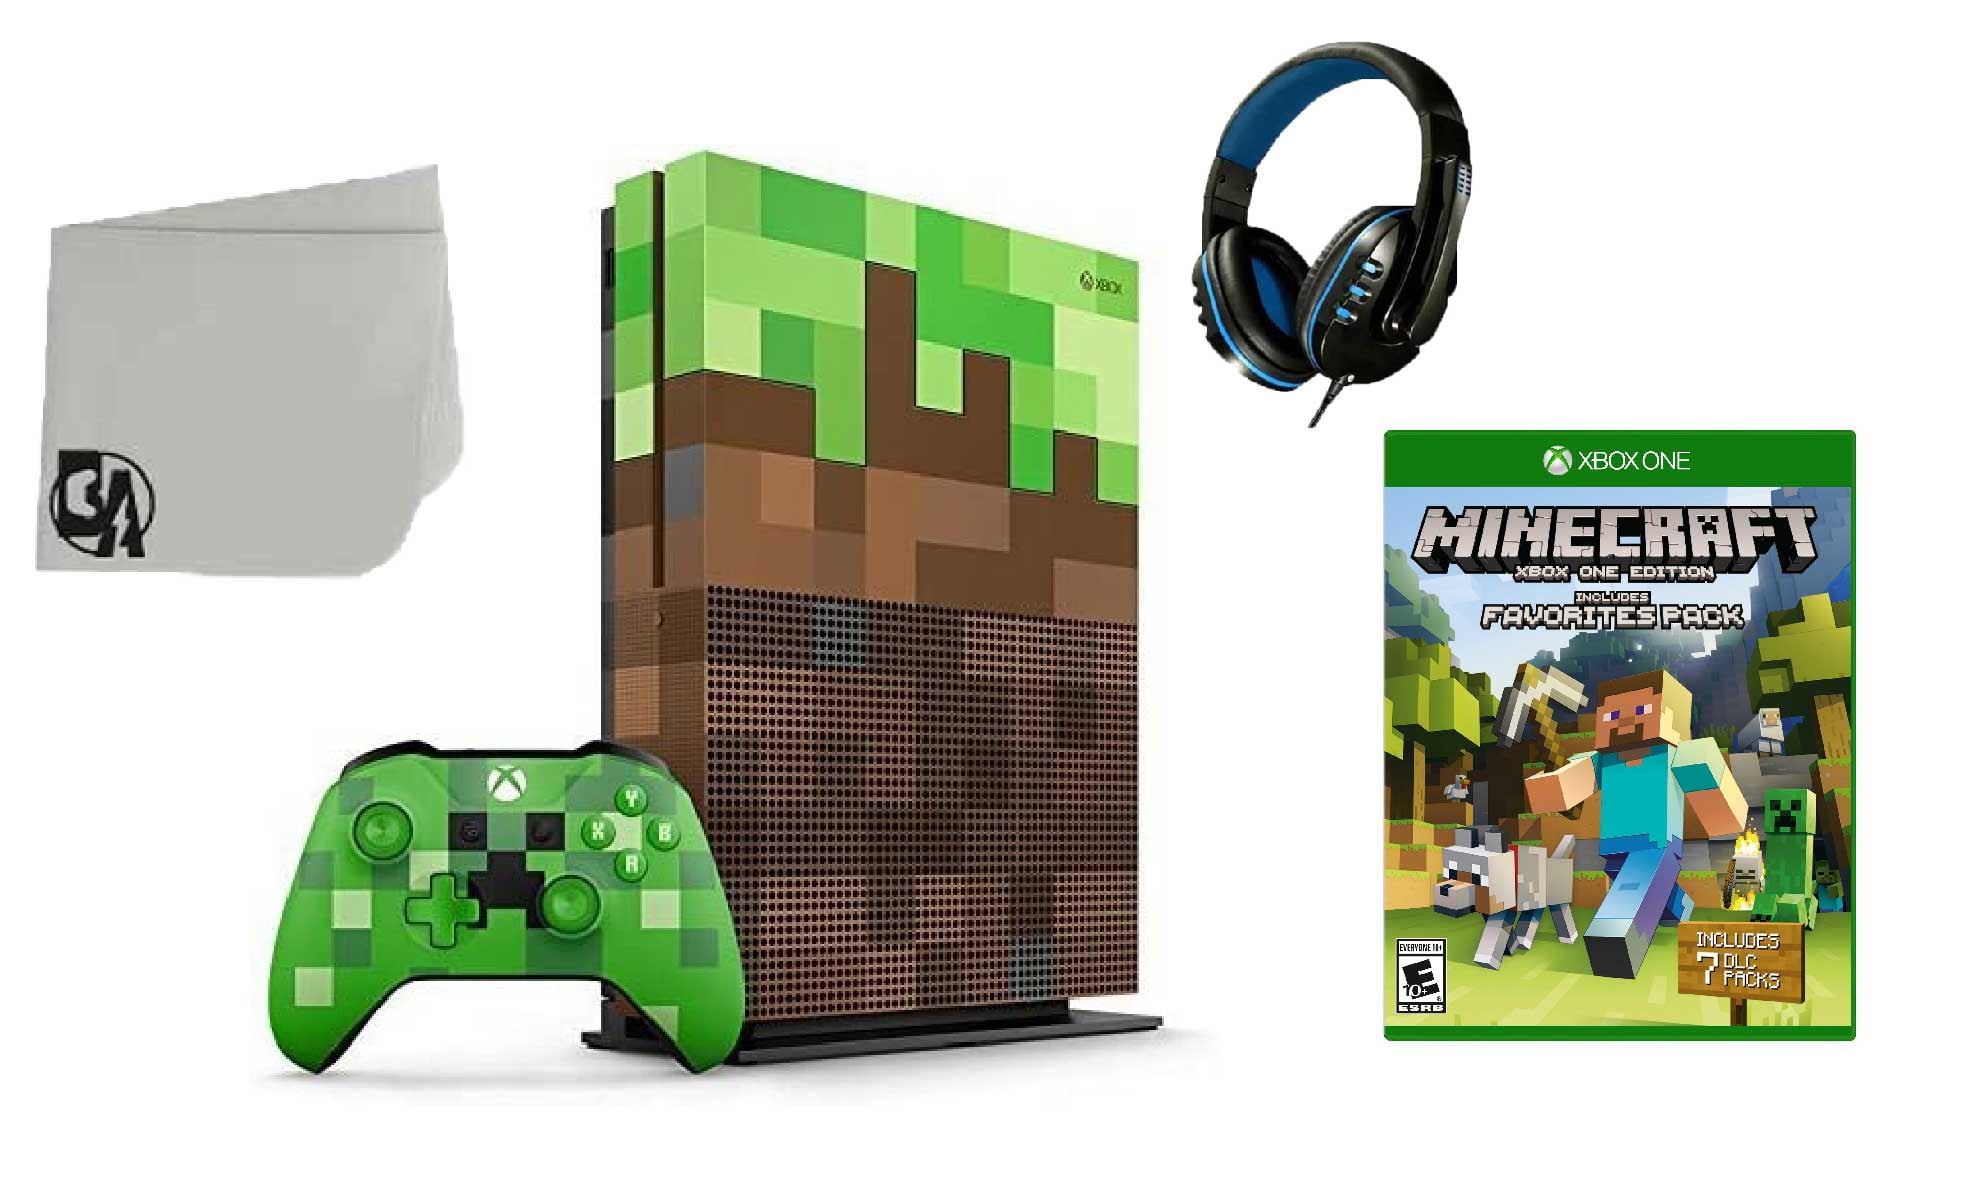 Minecraft: Xbox 360 Edition ganha skins de Halo e outras por DLC